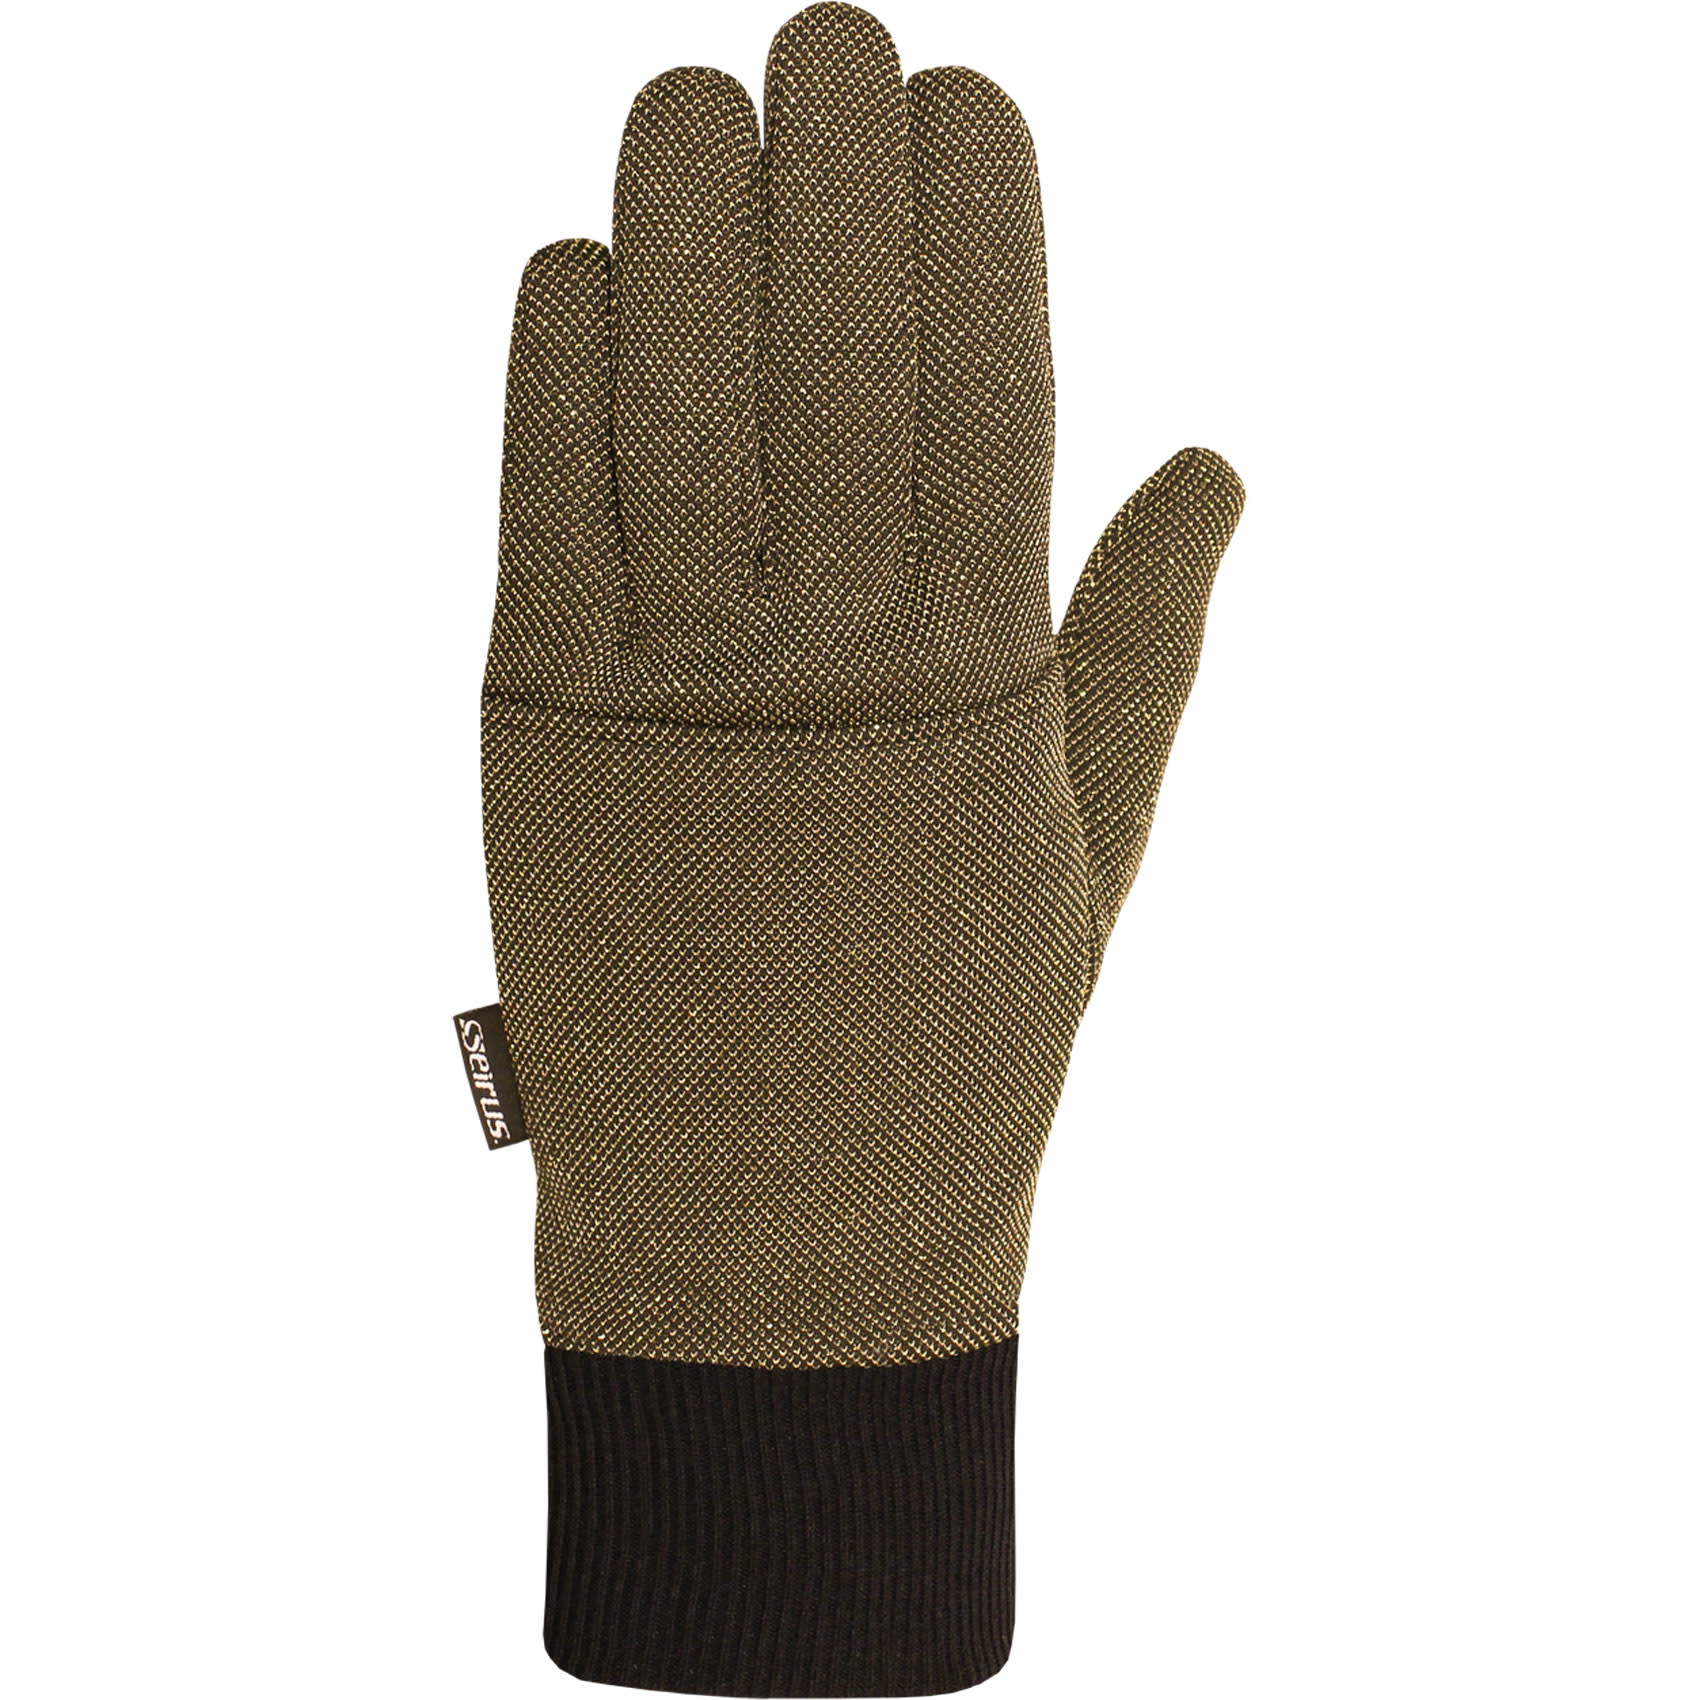 Sous-gants chauffants G-Heat - Rockmann équipements